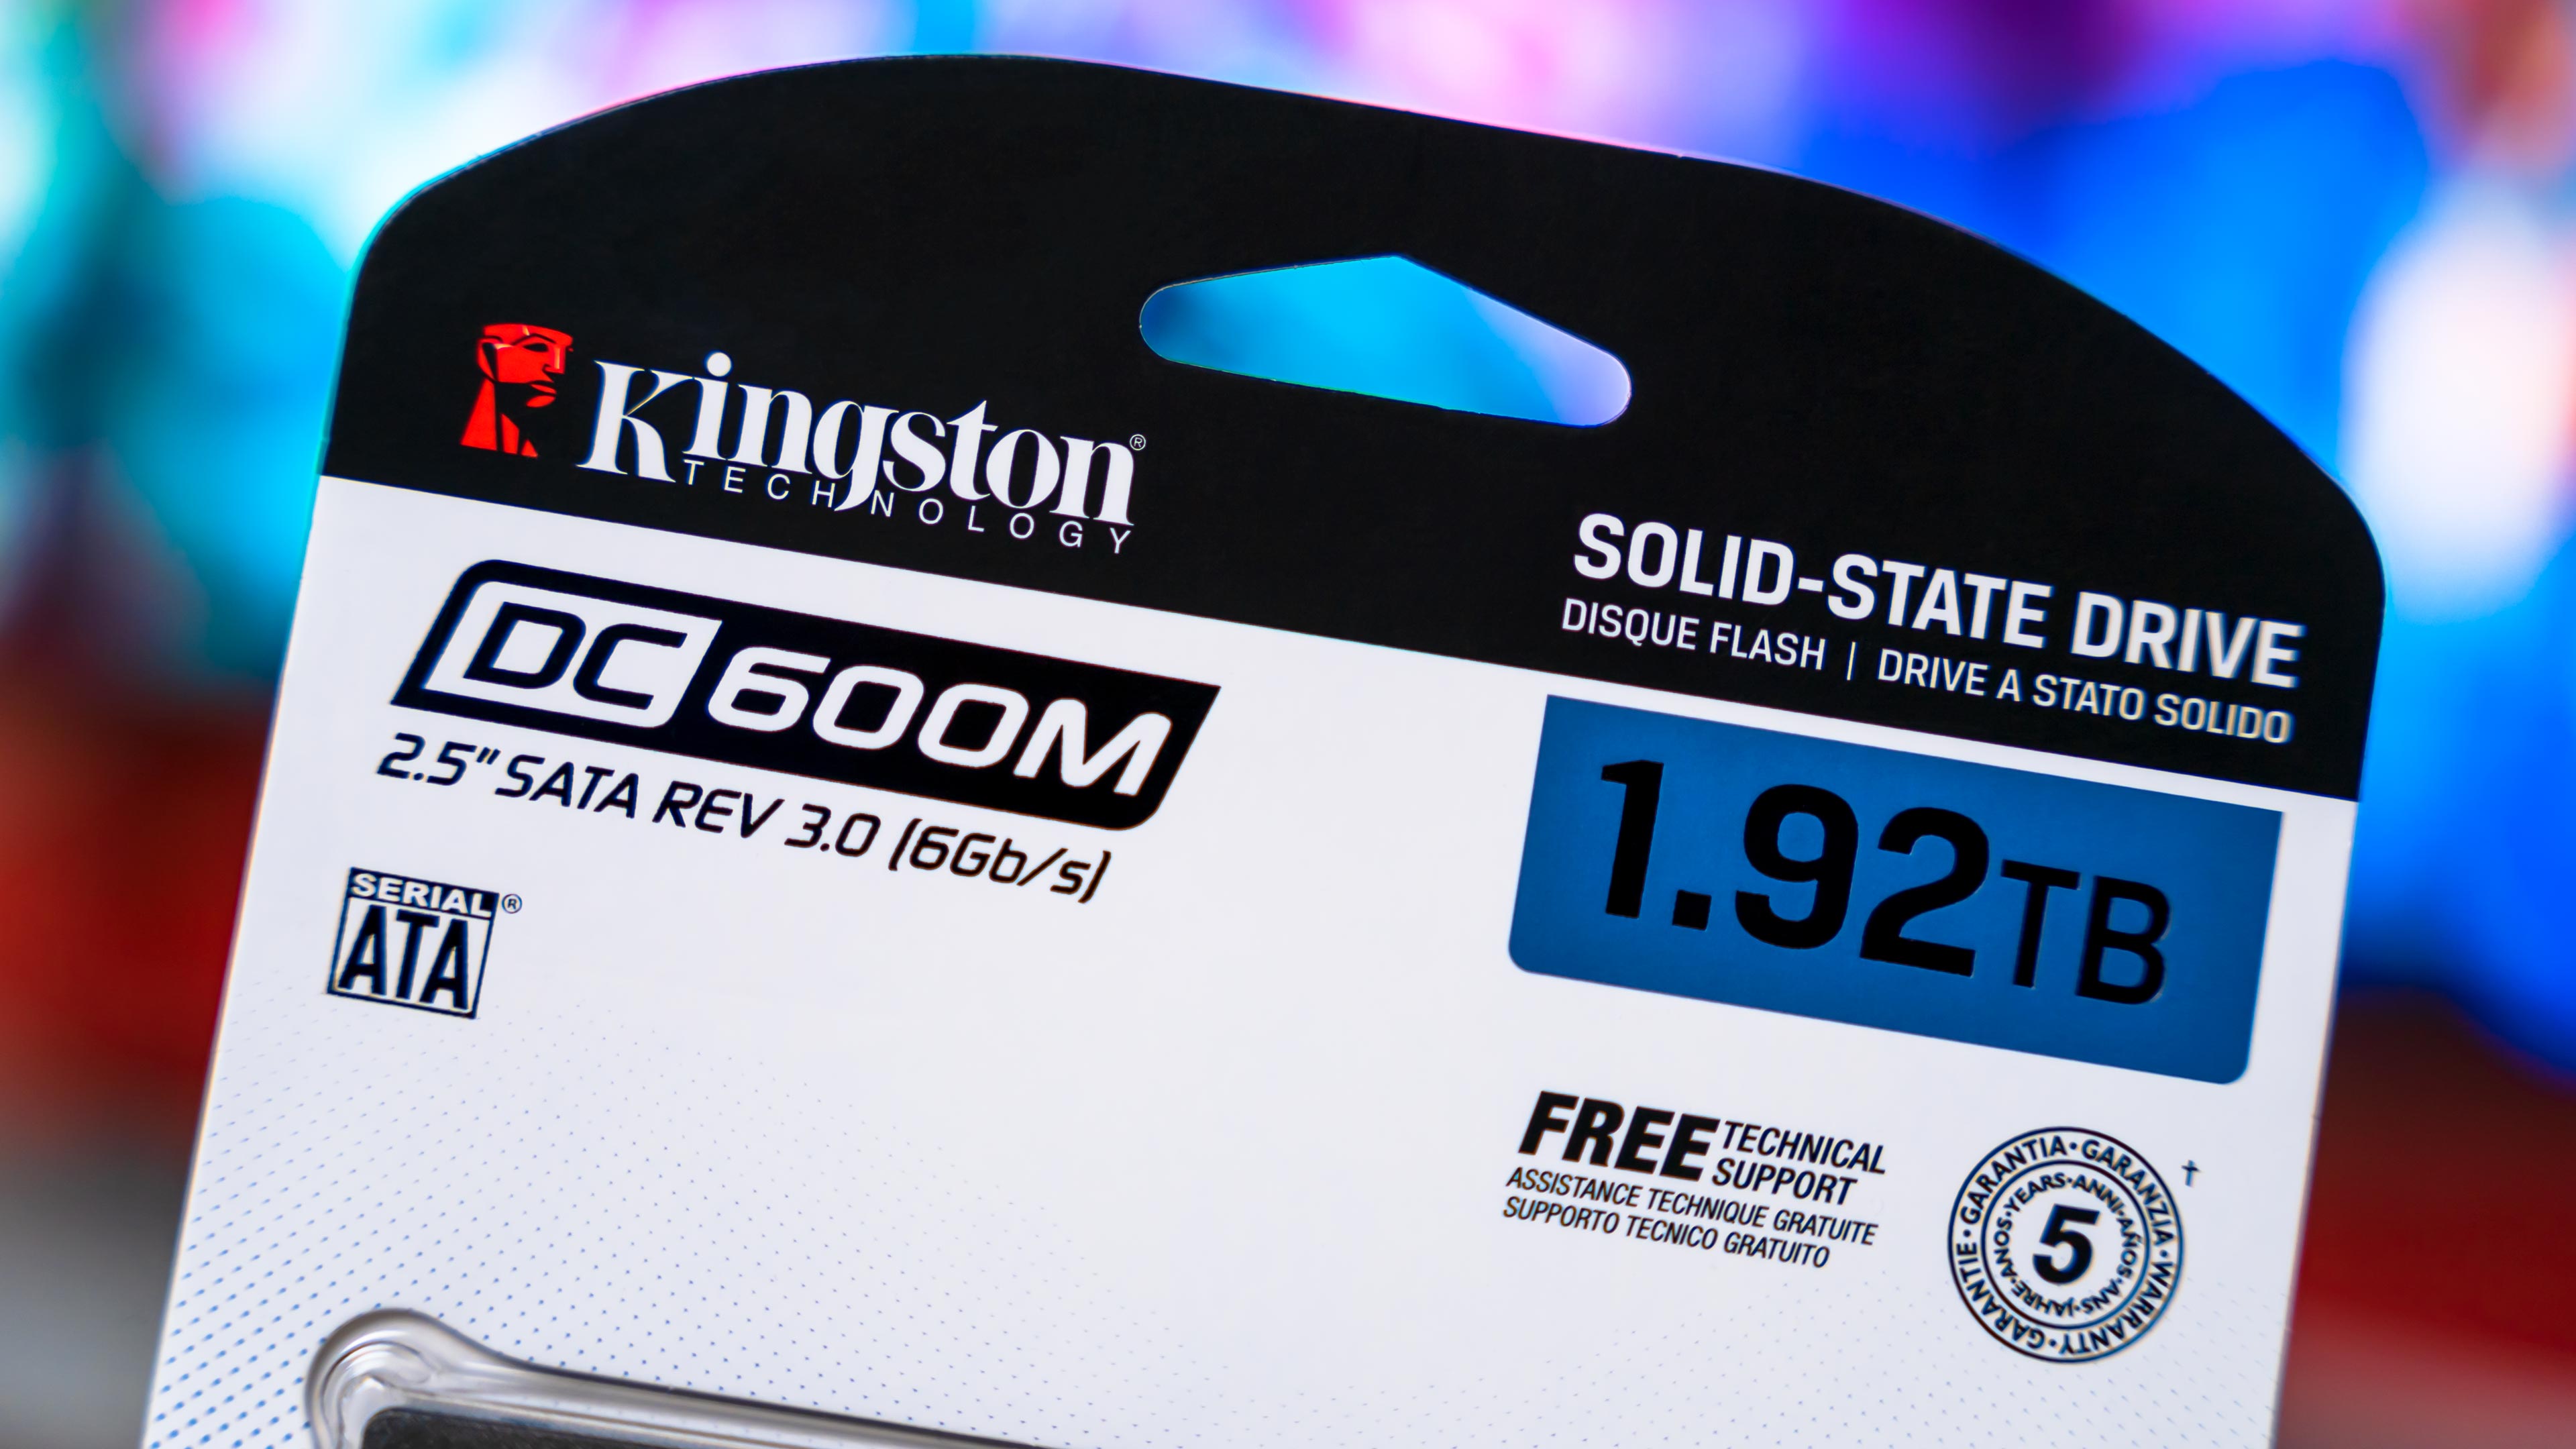 Kingston DC600M Box (2)